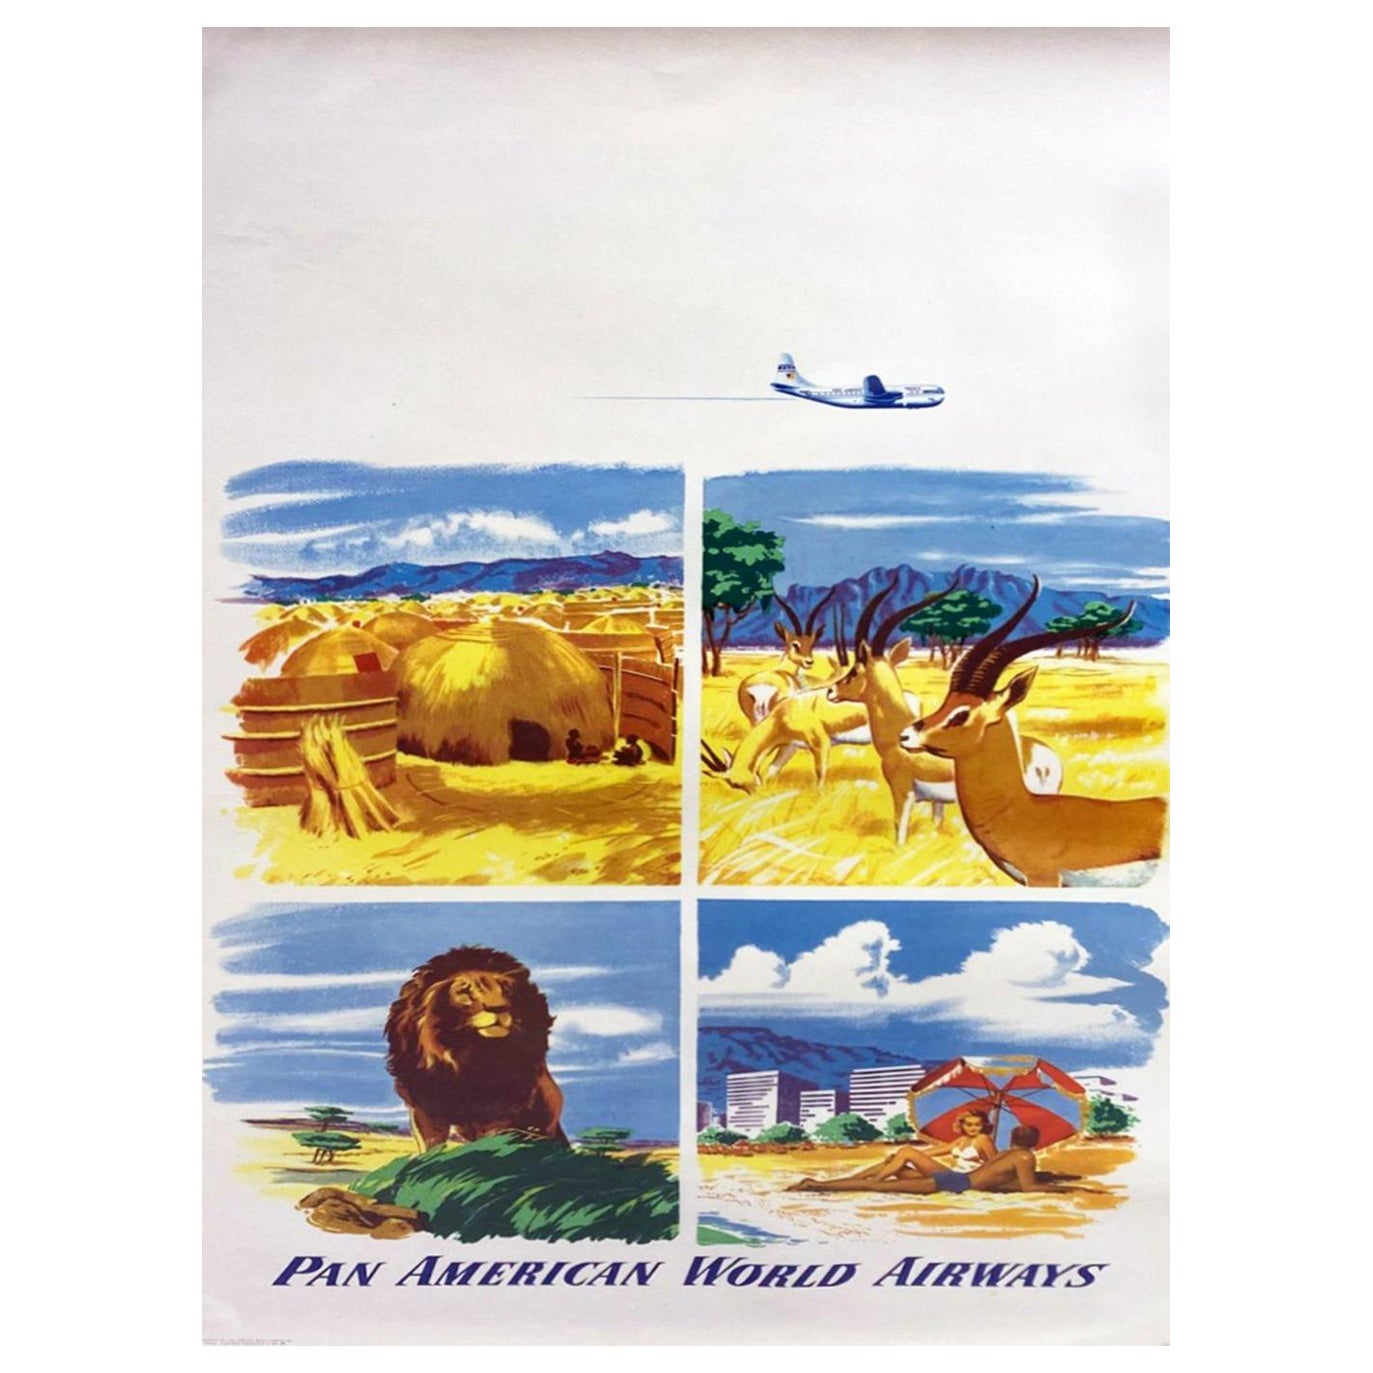 Affiche vintage d'origine d'Airbus Pan American World Airways, 1951